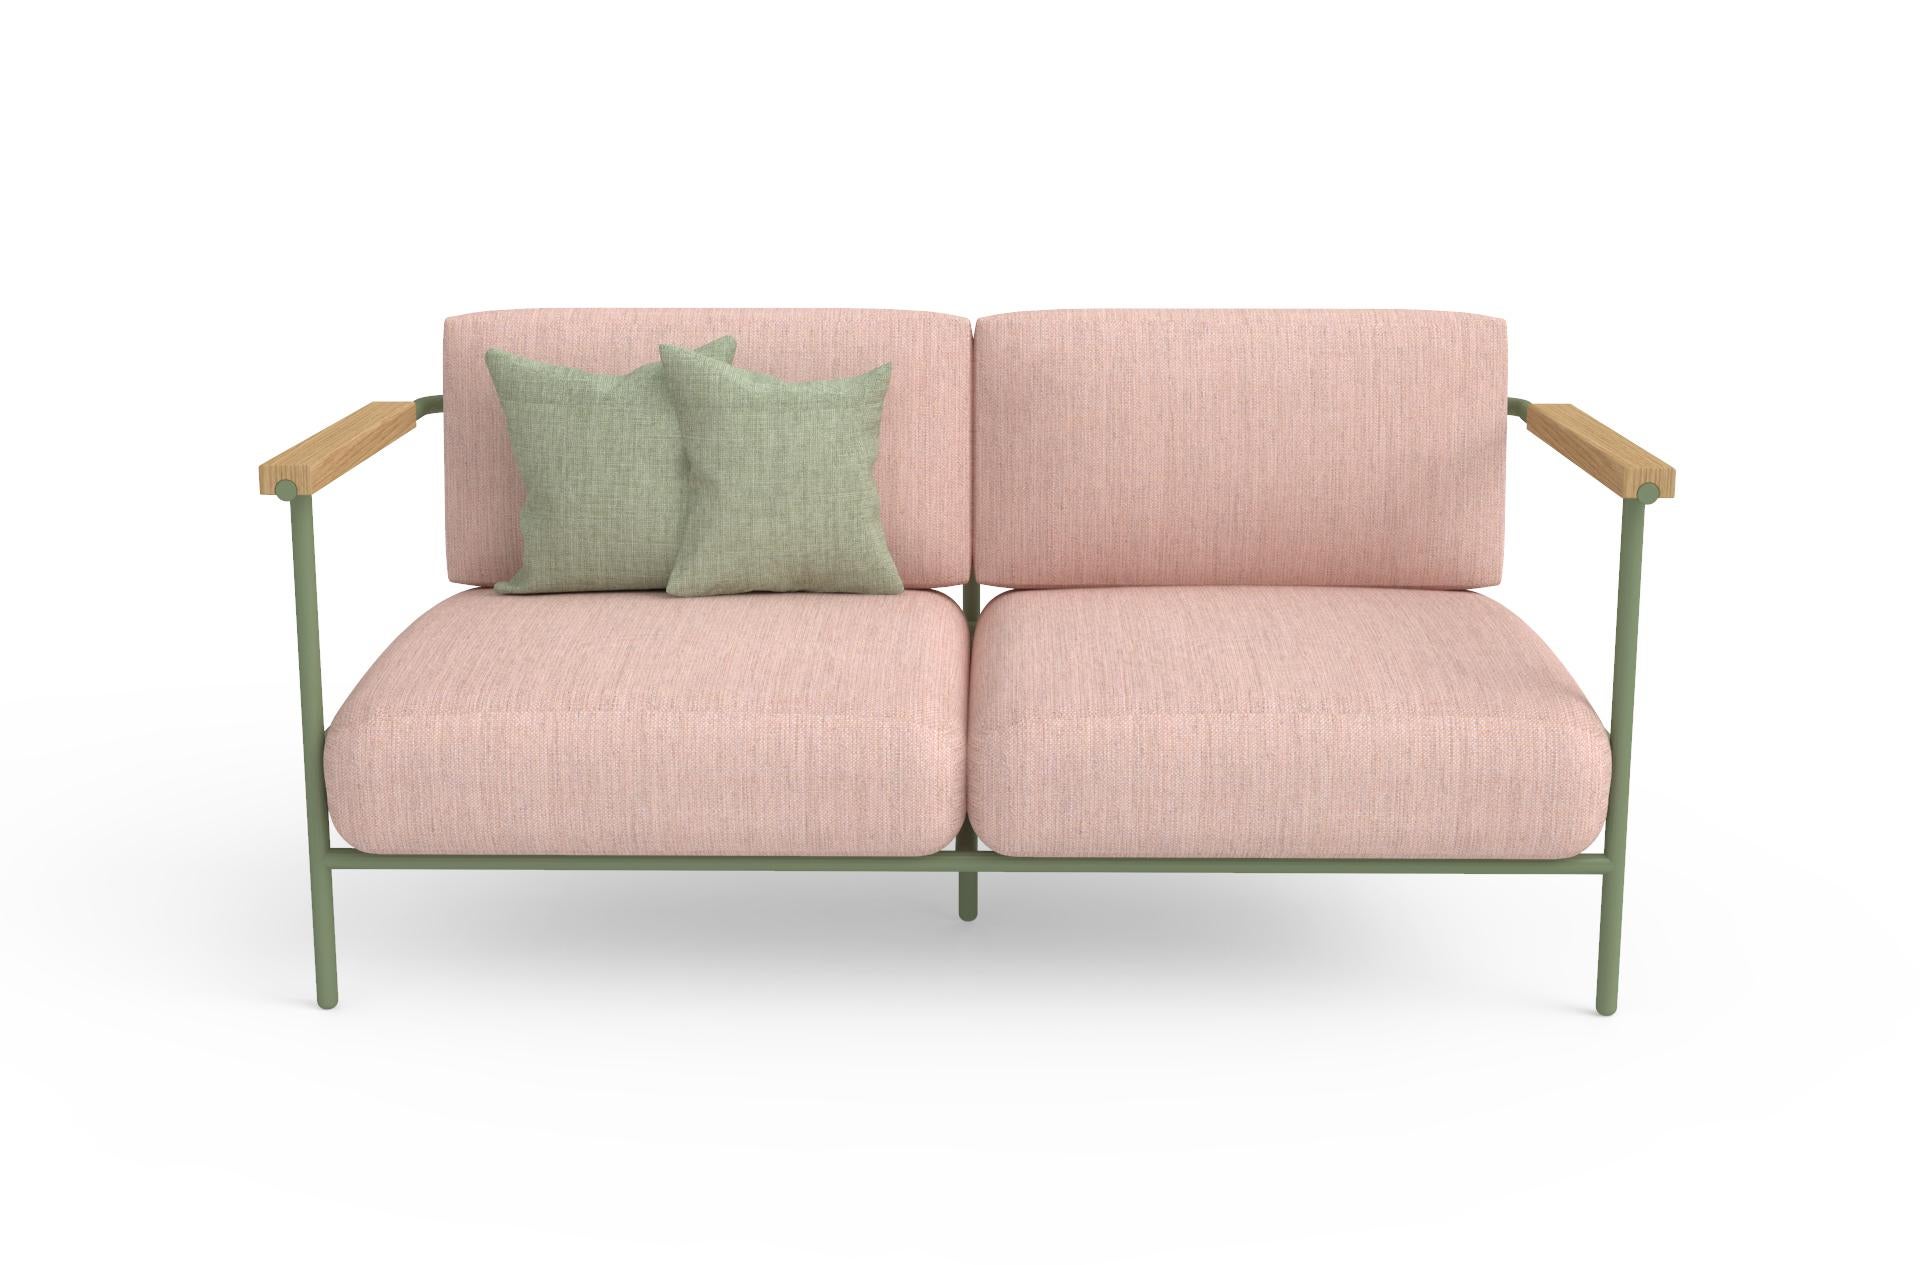 Das farbenfrohe Sofa Avenida Mexico ist ein leichtes, metallisches Sofa mit dunkelblauer Struktur, ideal für überdachte Außenbereiche. Seine Metallstruktur ist pulverbeschichtet, was ihn widerstandsfähiger gegen Feuchtigkeit und korrosive Umgebungen